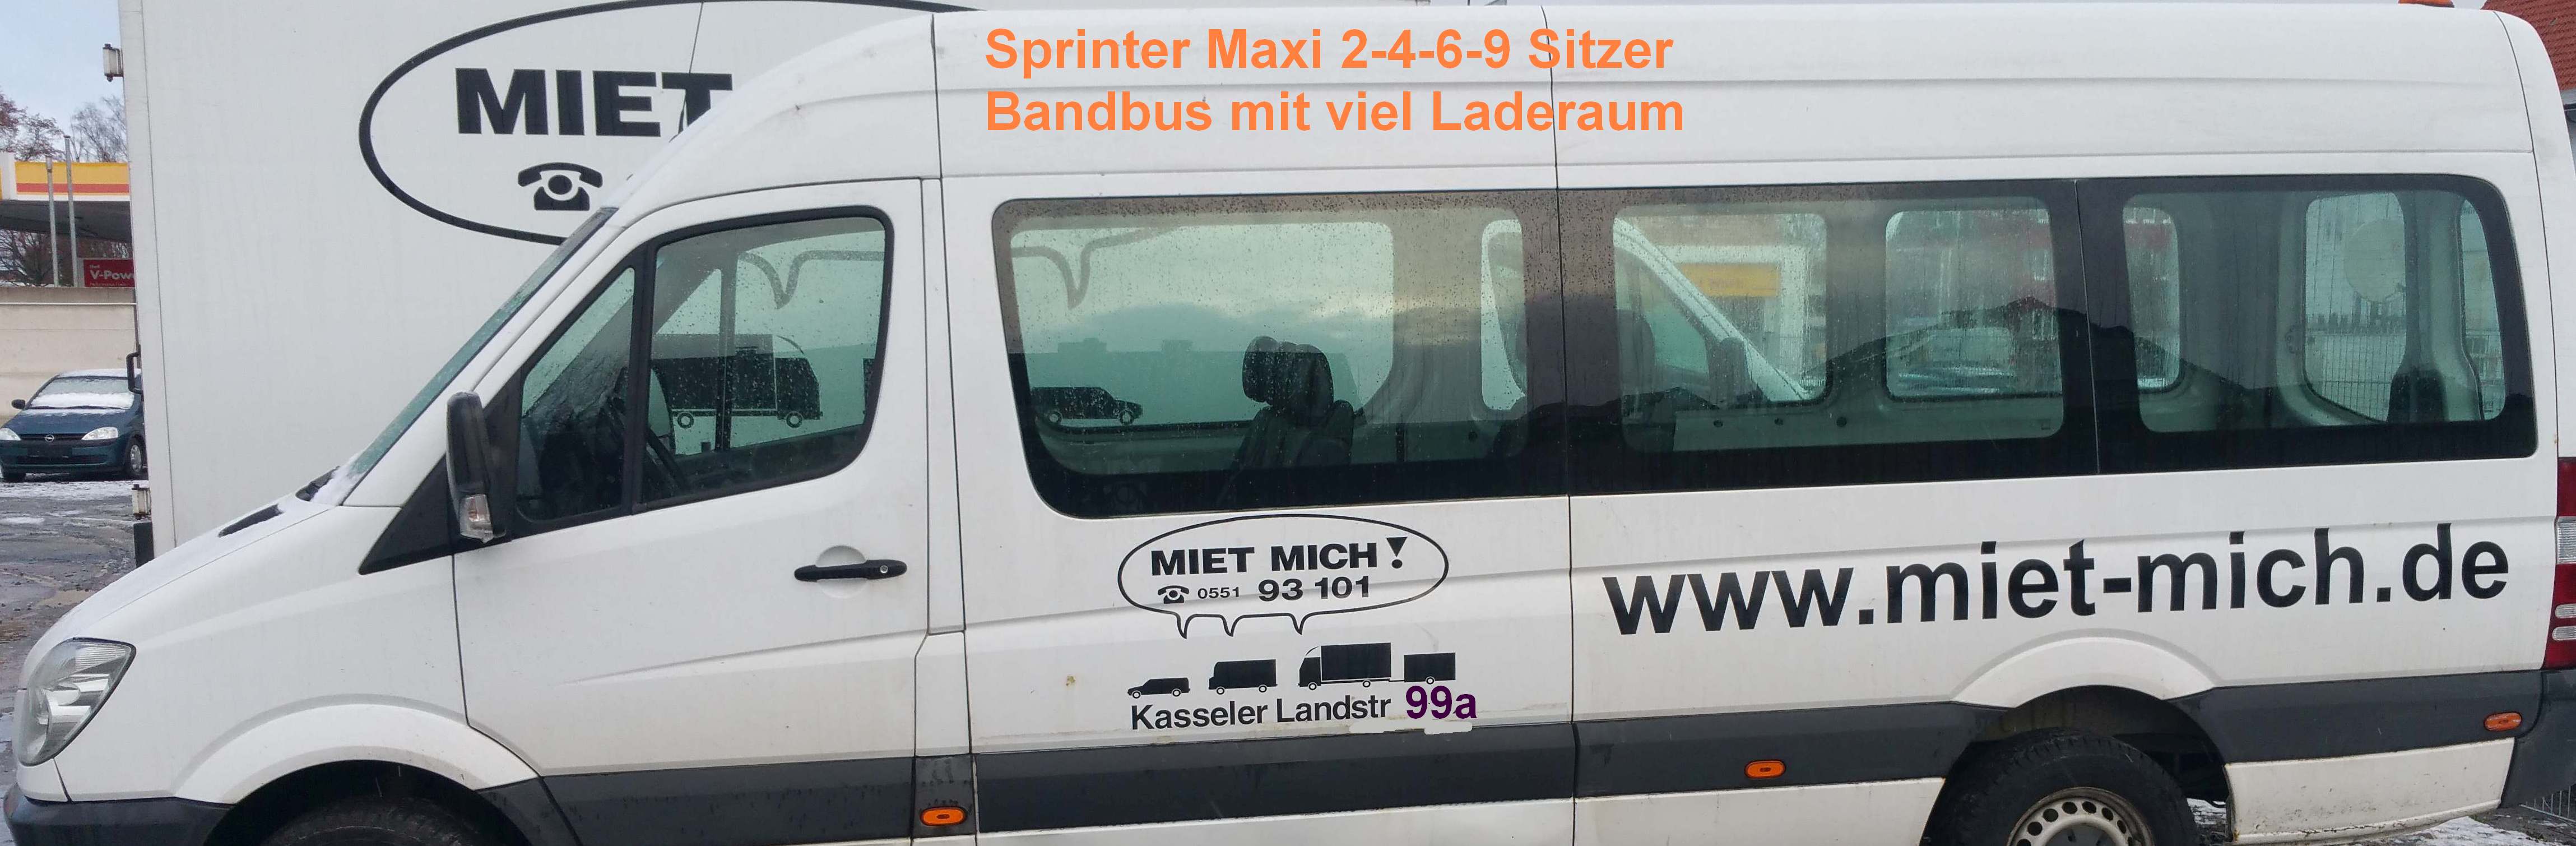 Maxi-Sprinter 3 - 6 - 9-Sitzer  nur bei Onlinebuchung